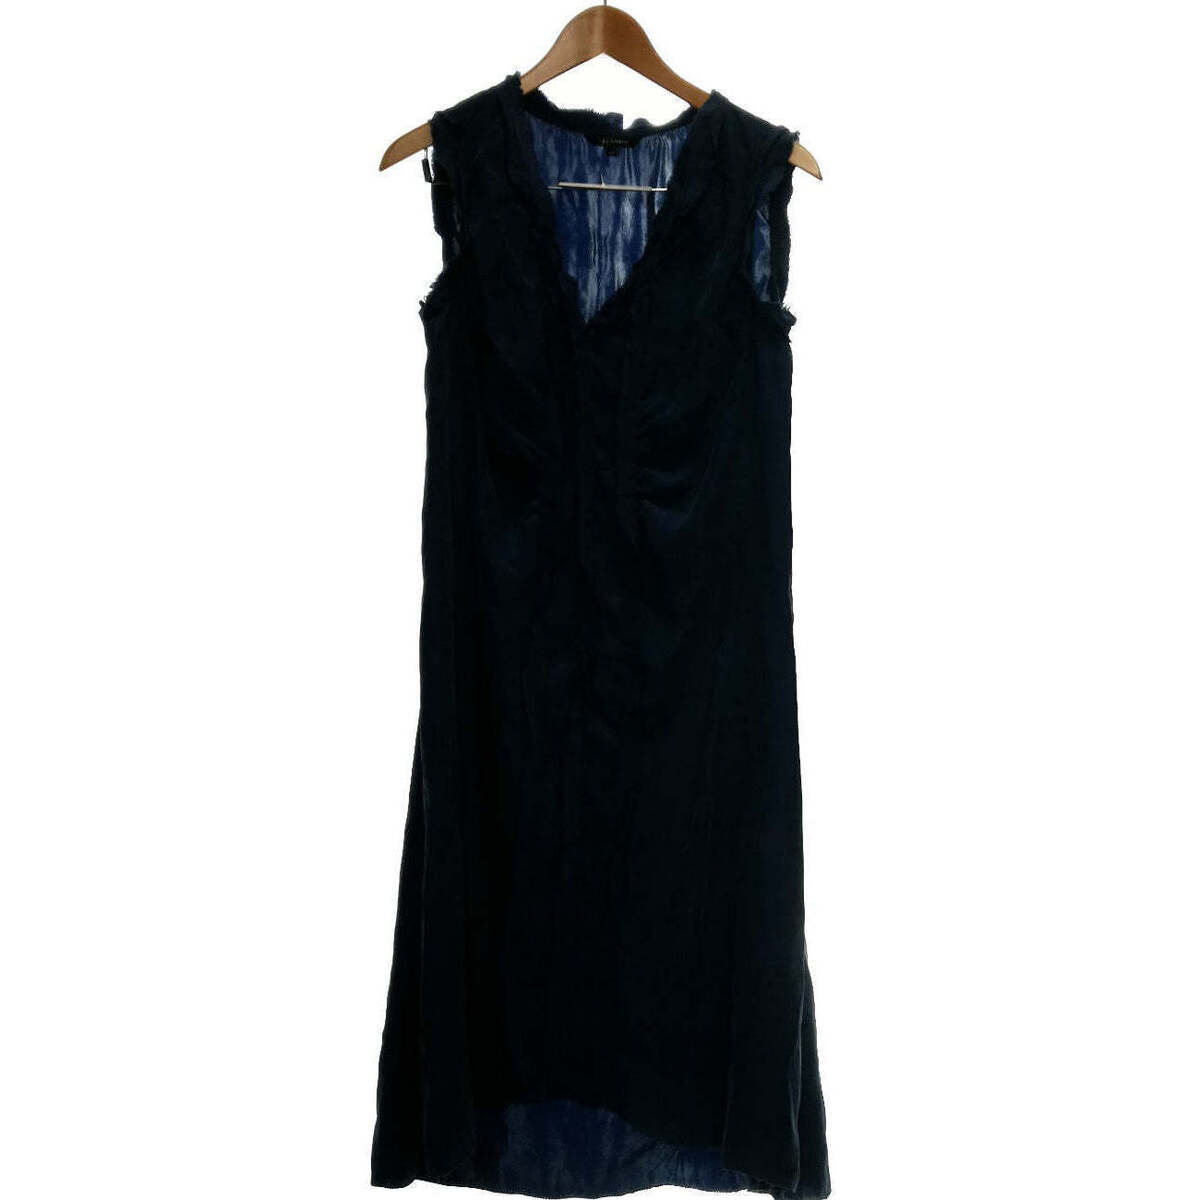 Vêtements Femme Robes Tara Jarmon 42 - T4 - L/XL Bleu